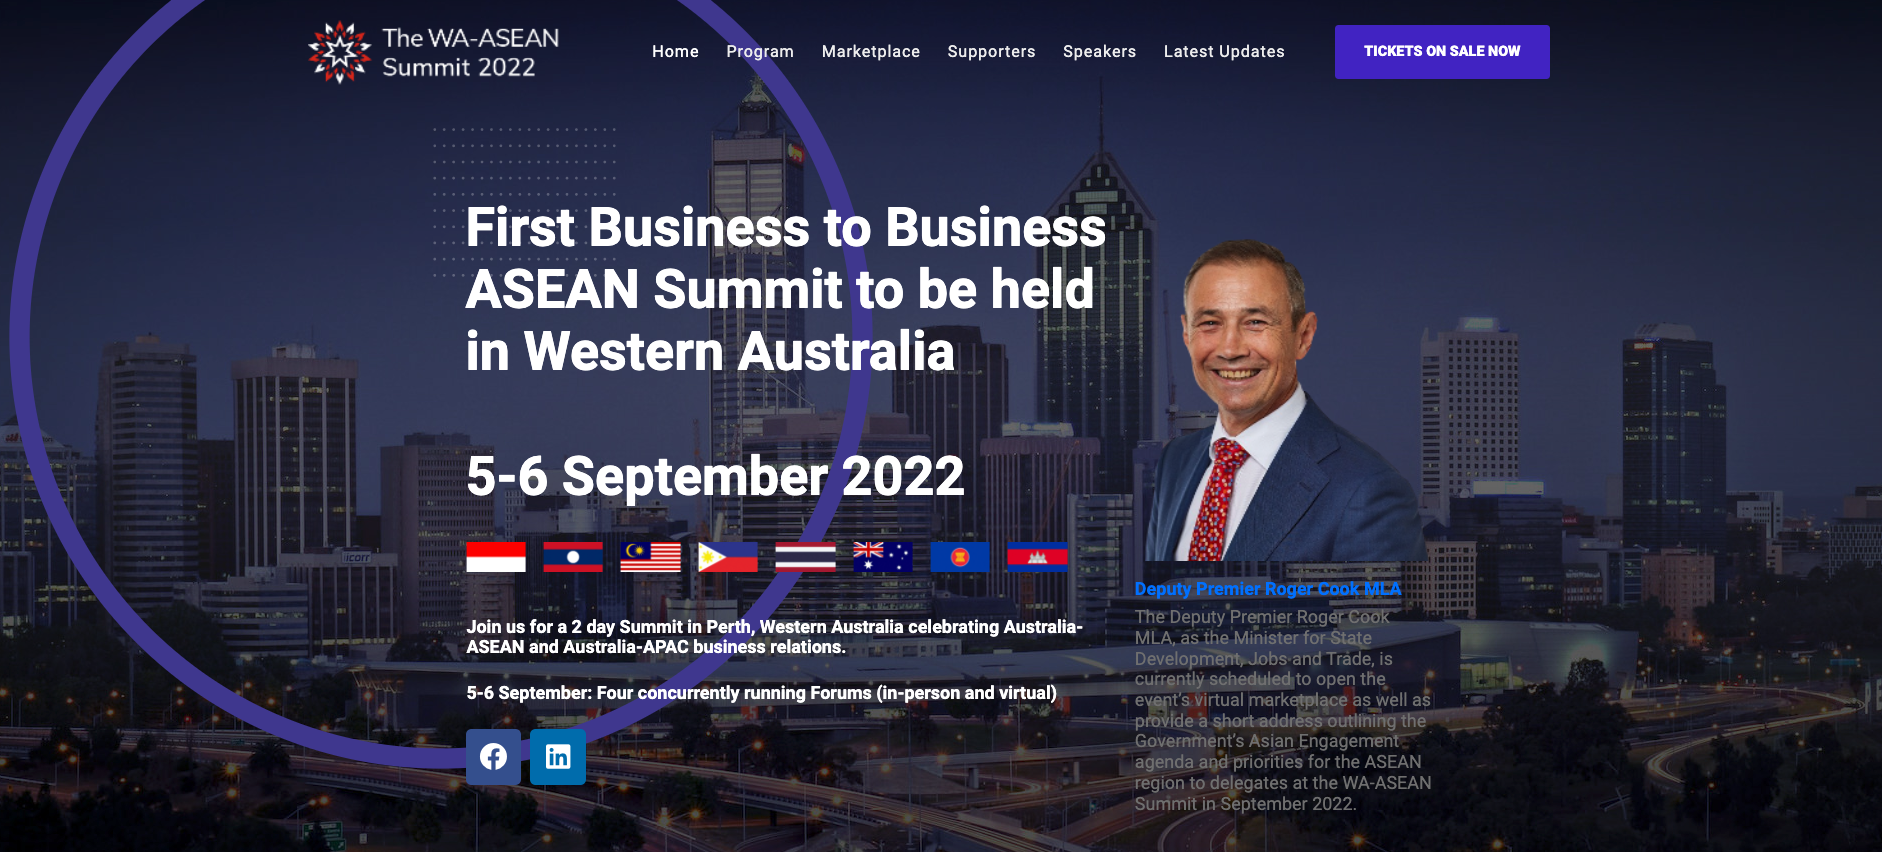 WA-ASEAN Summit